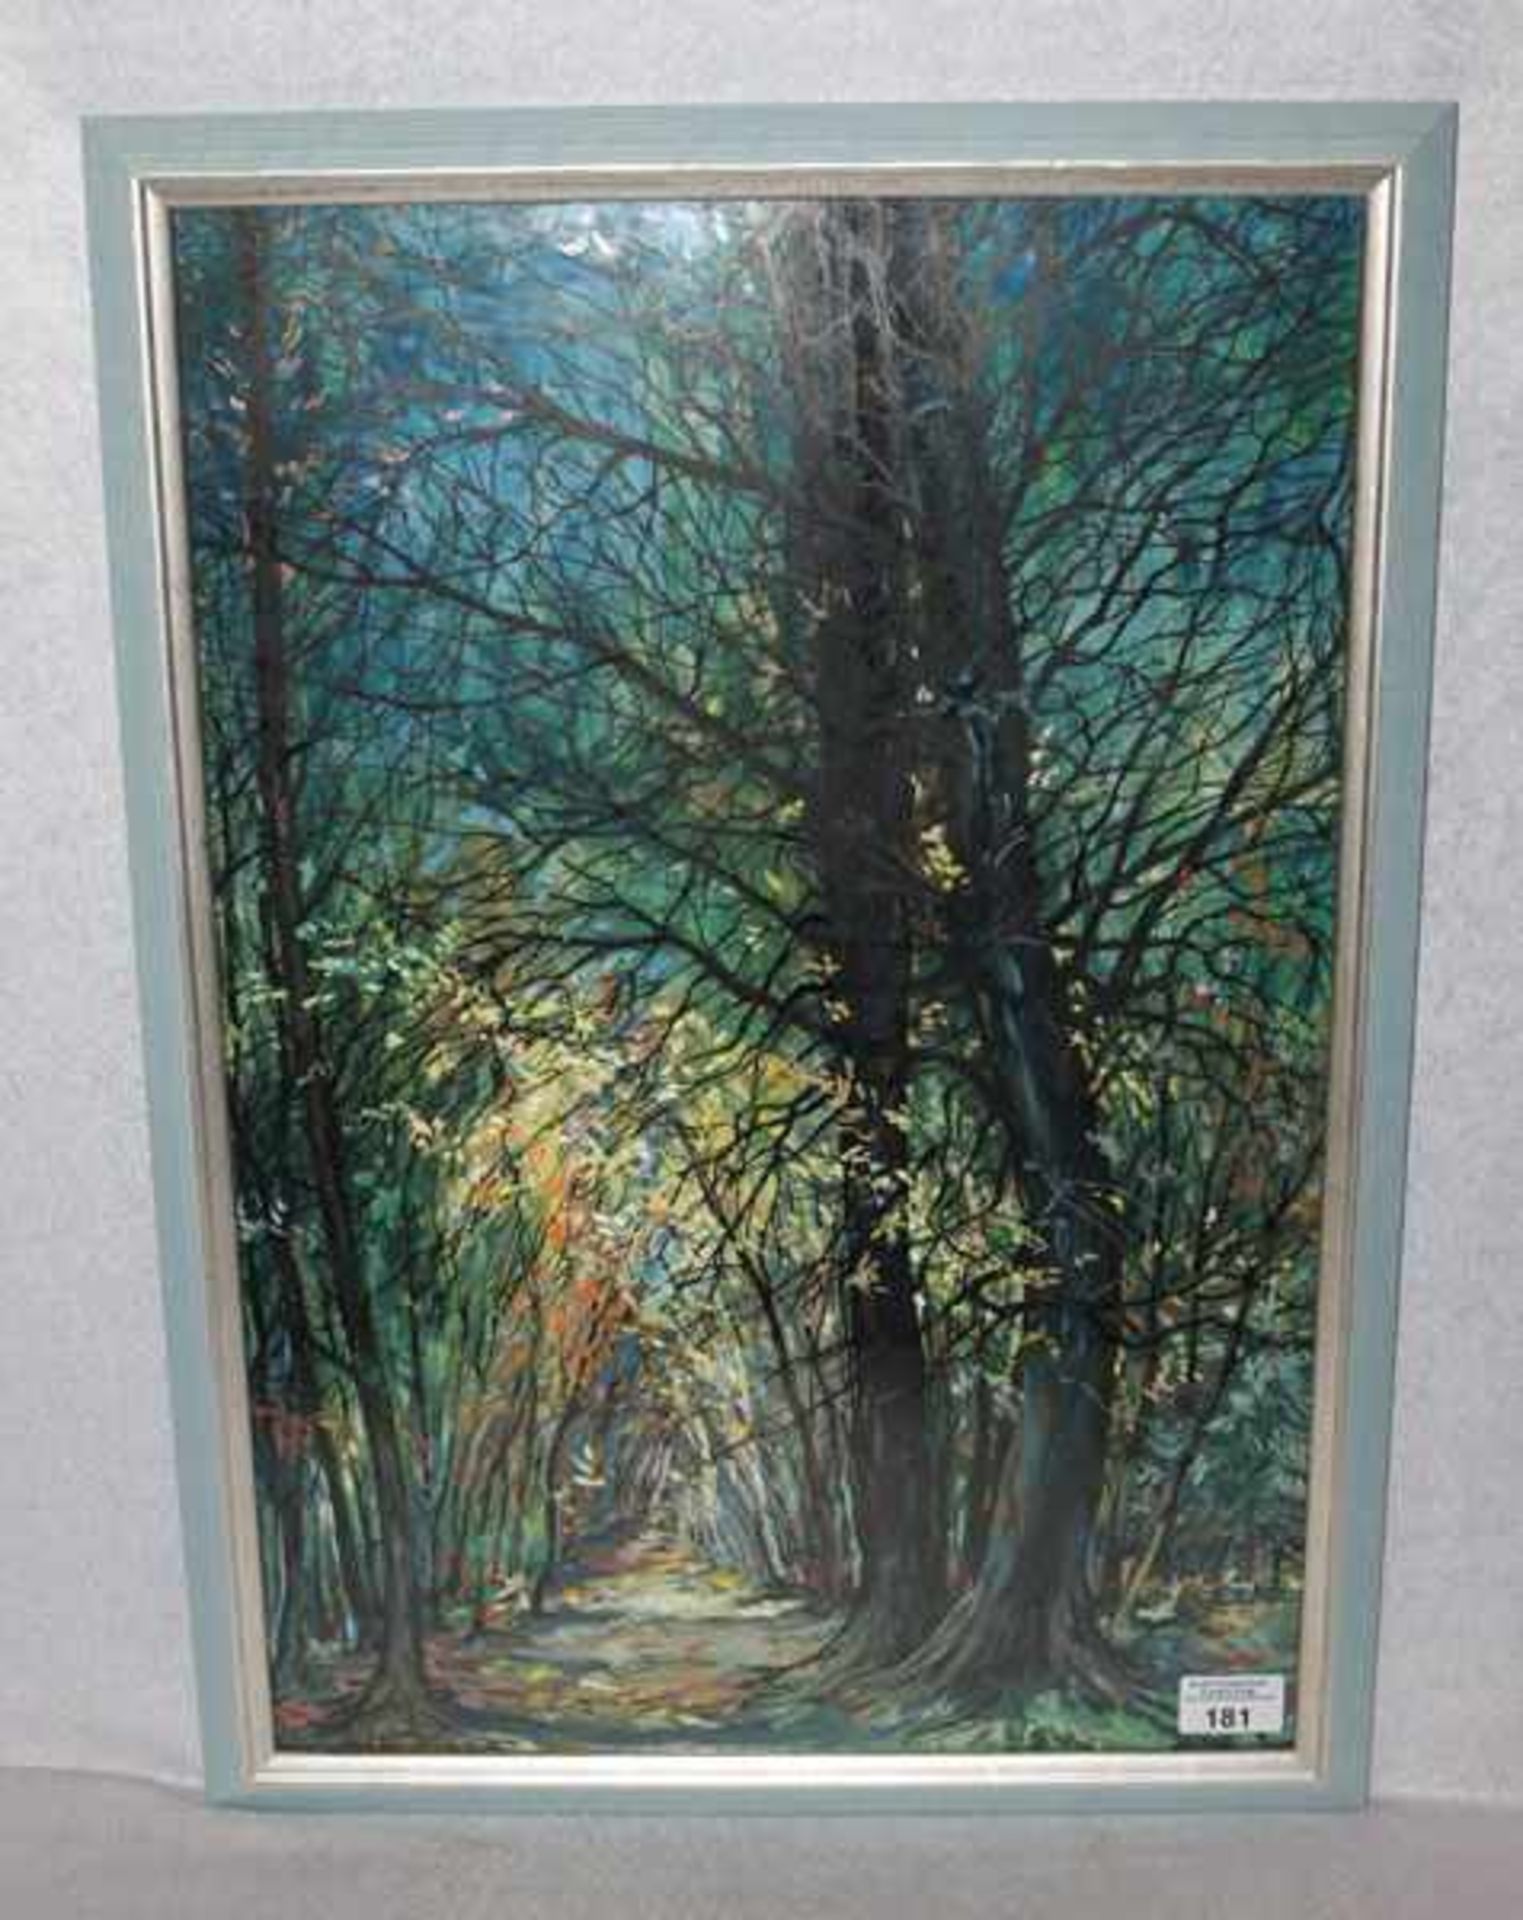 Gemälde Mischtechnik, 'Wald', signiert Luigi Malipiero, 1967, * 1901 Triest + 1975 Sommerhausen,